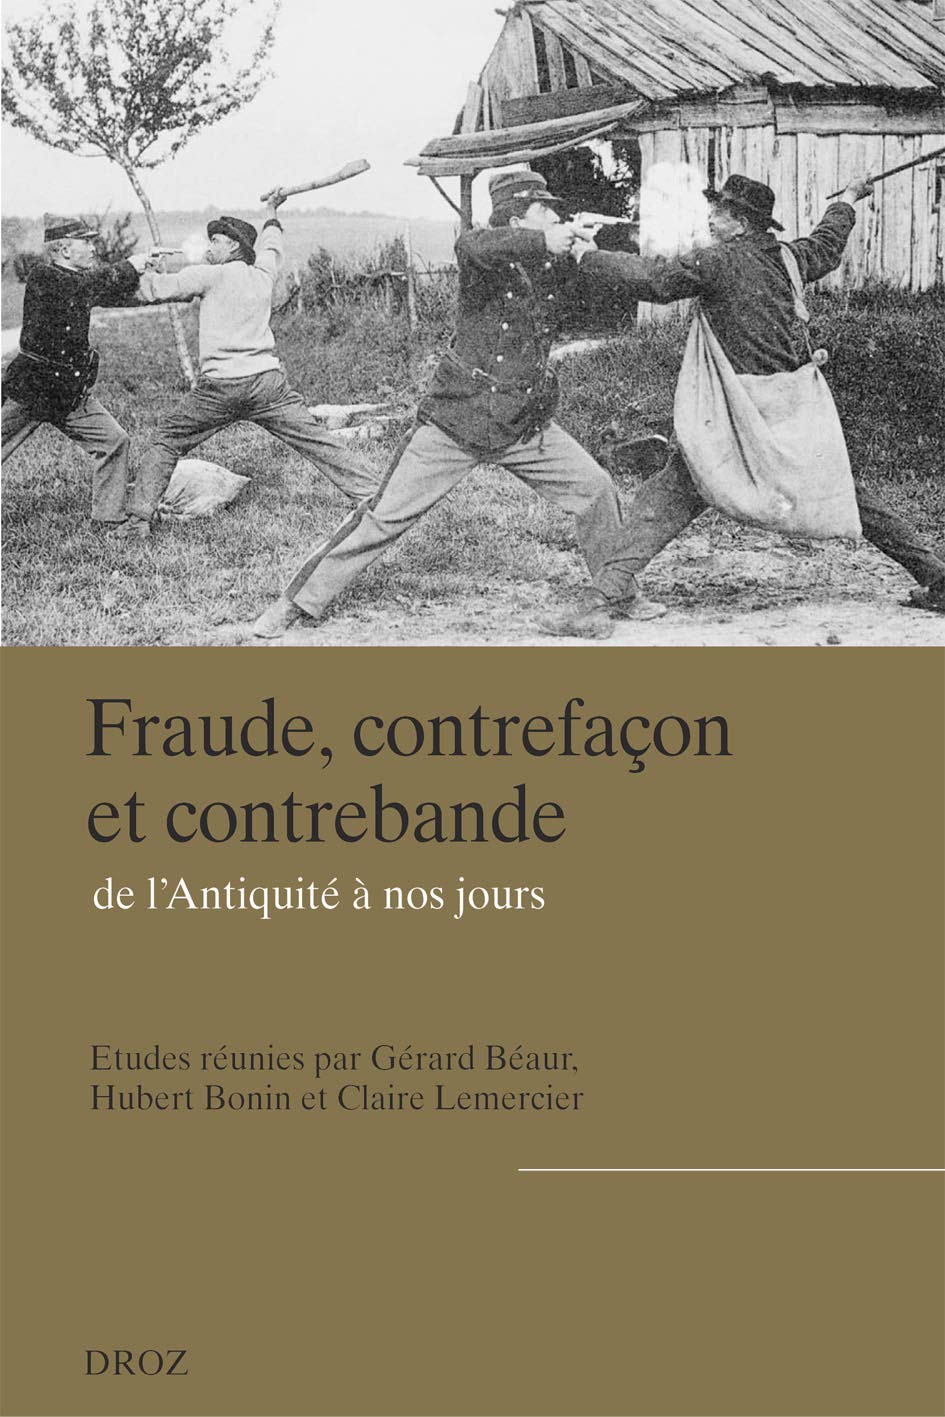 Fraude, contrefaçon et contrebande de l'Antiquité à nos jours, 2013, 832 p.